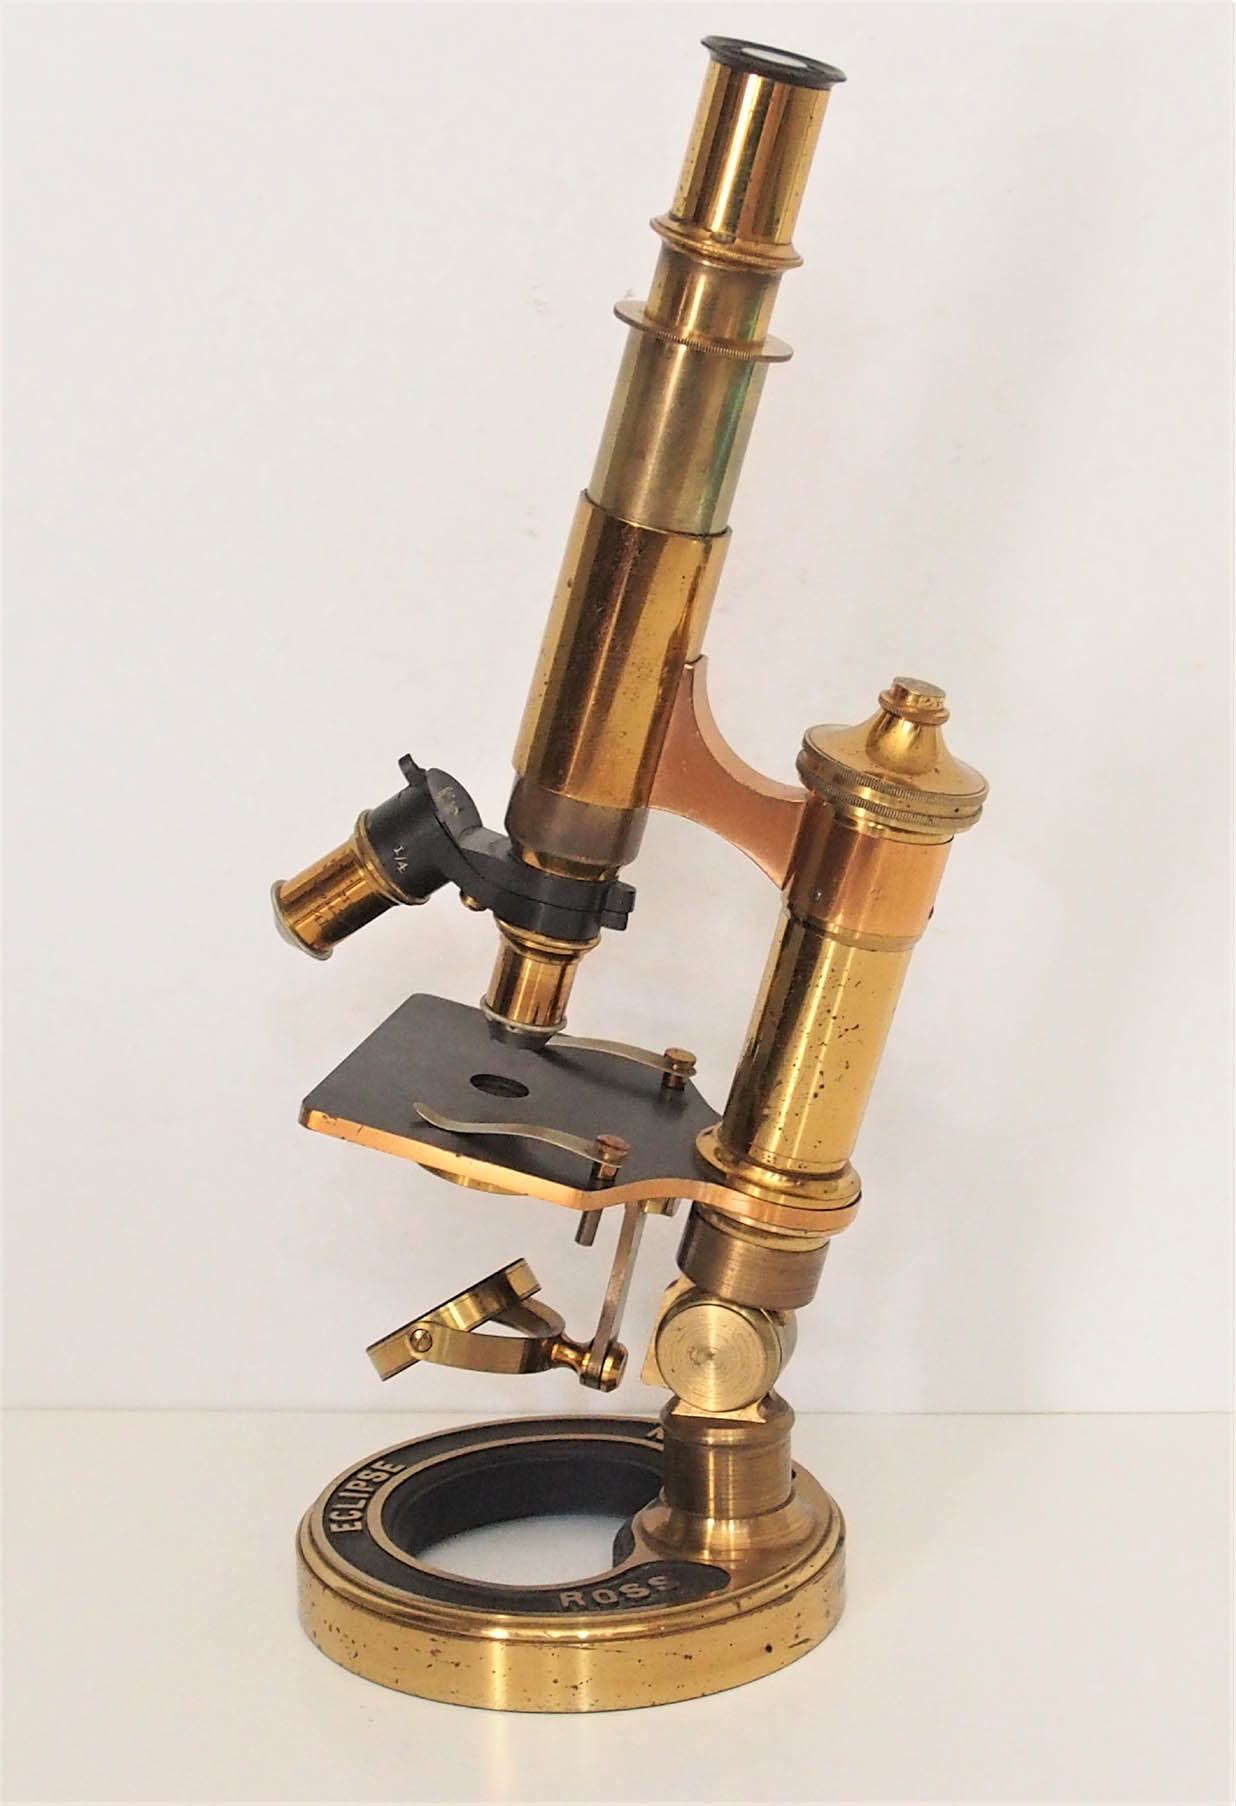 XXXX microscope